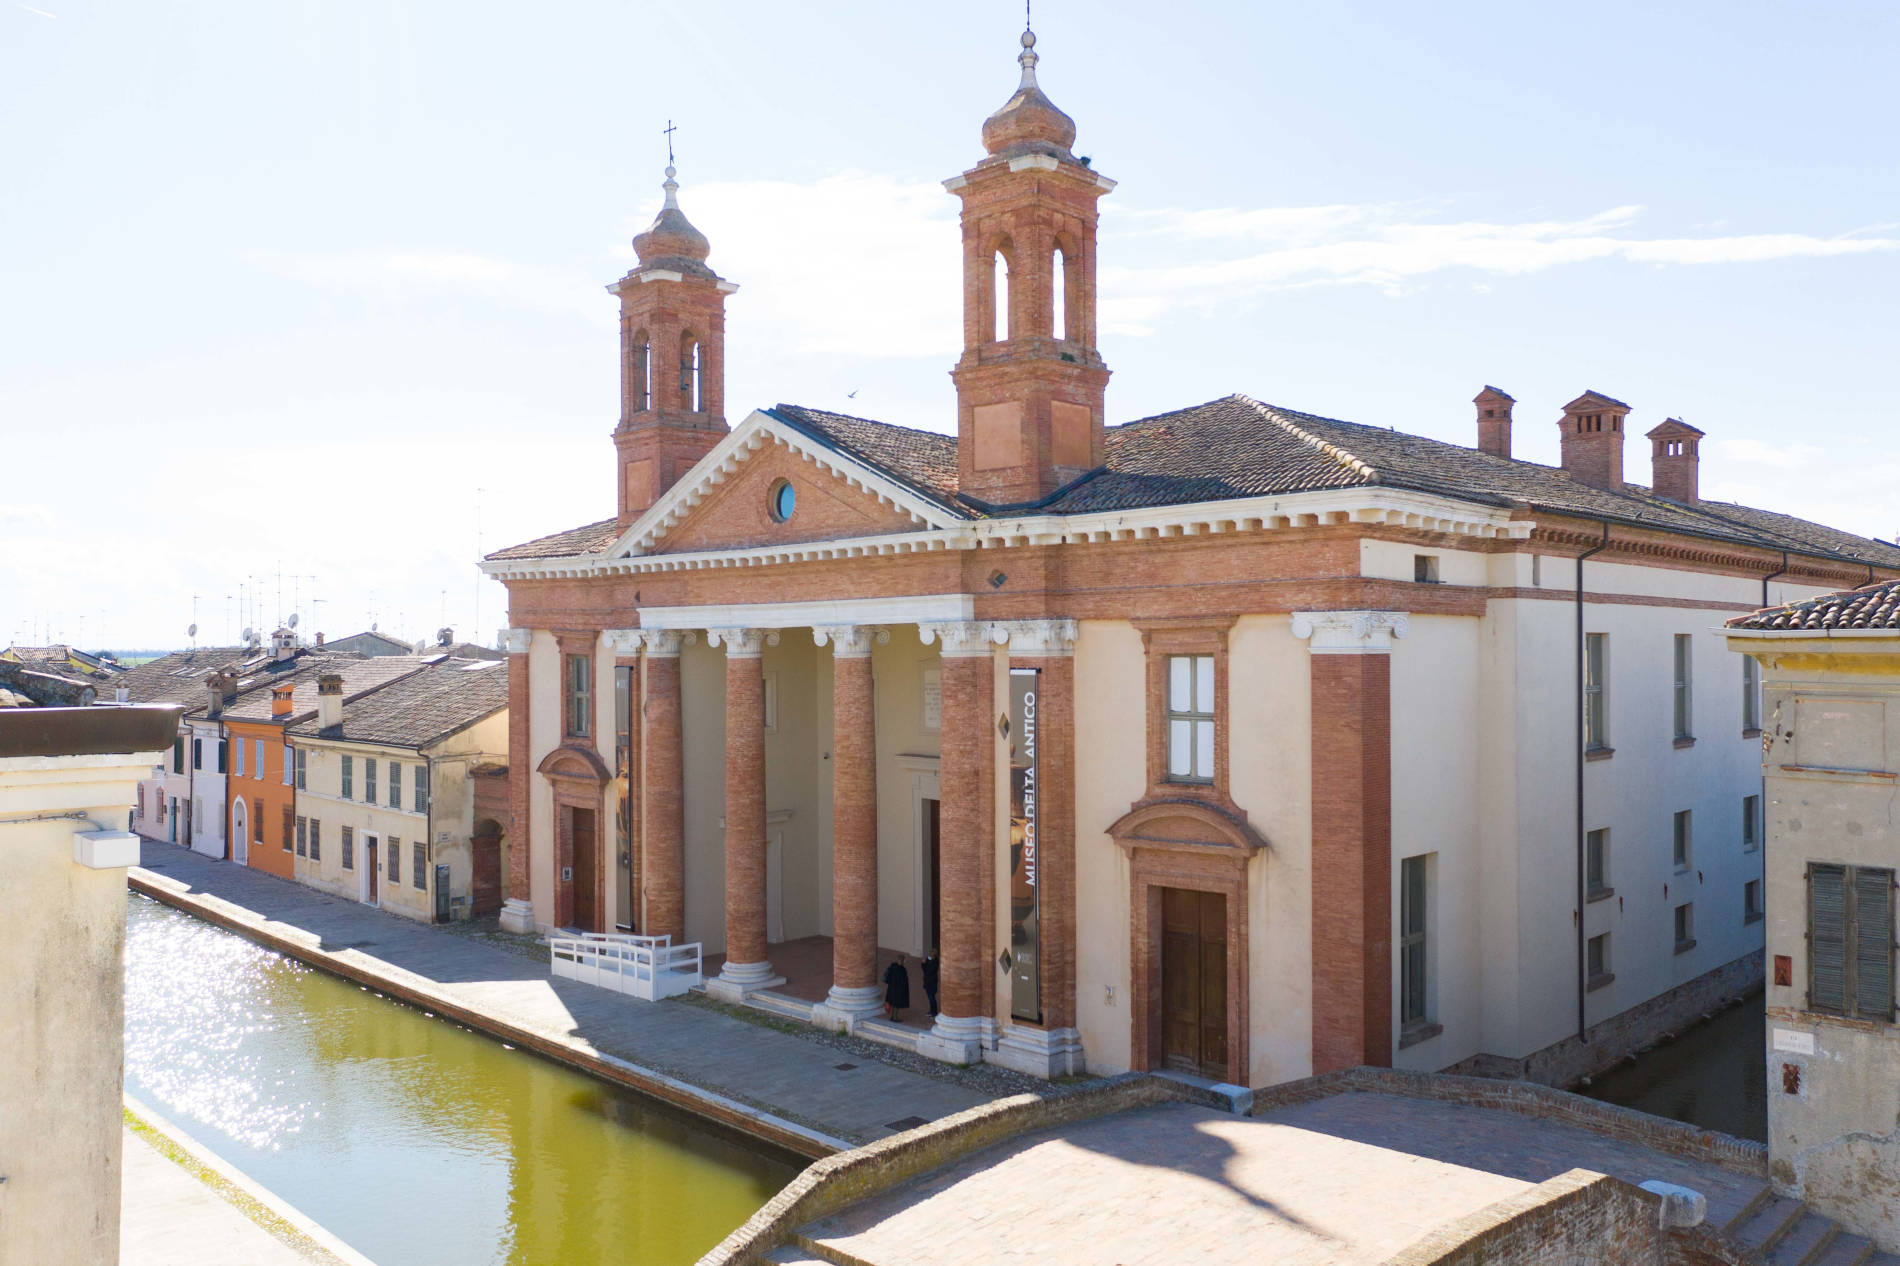 Comacchio celebrates the city's 100th anniversary